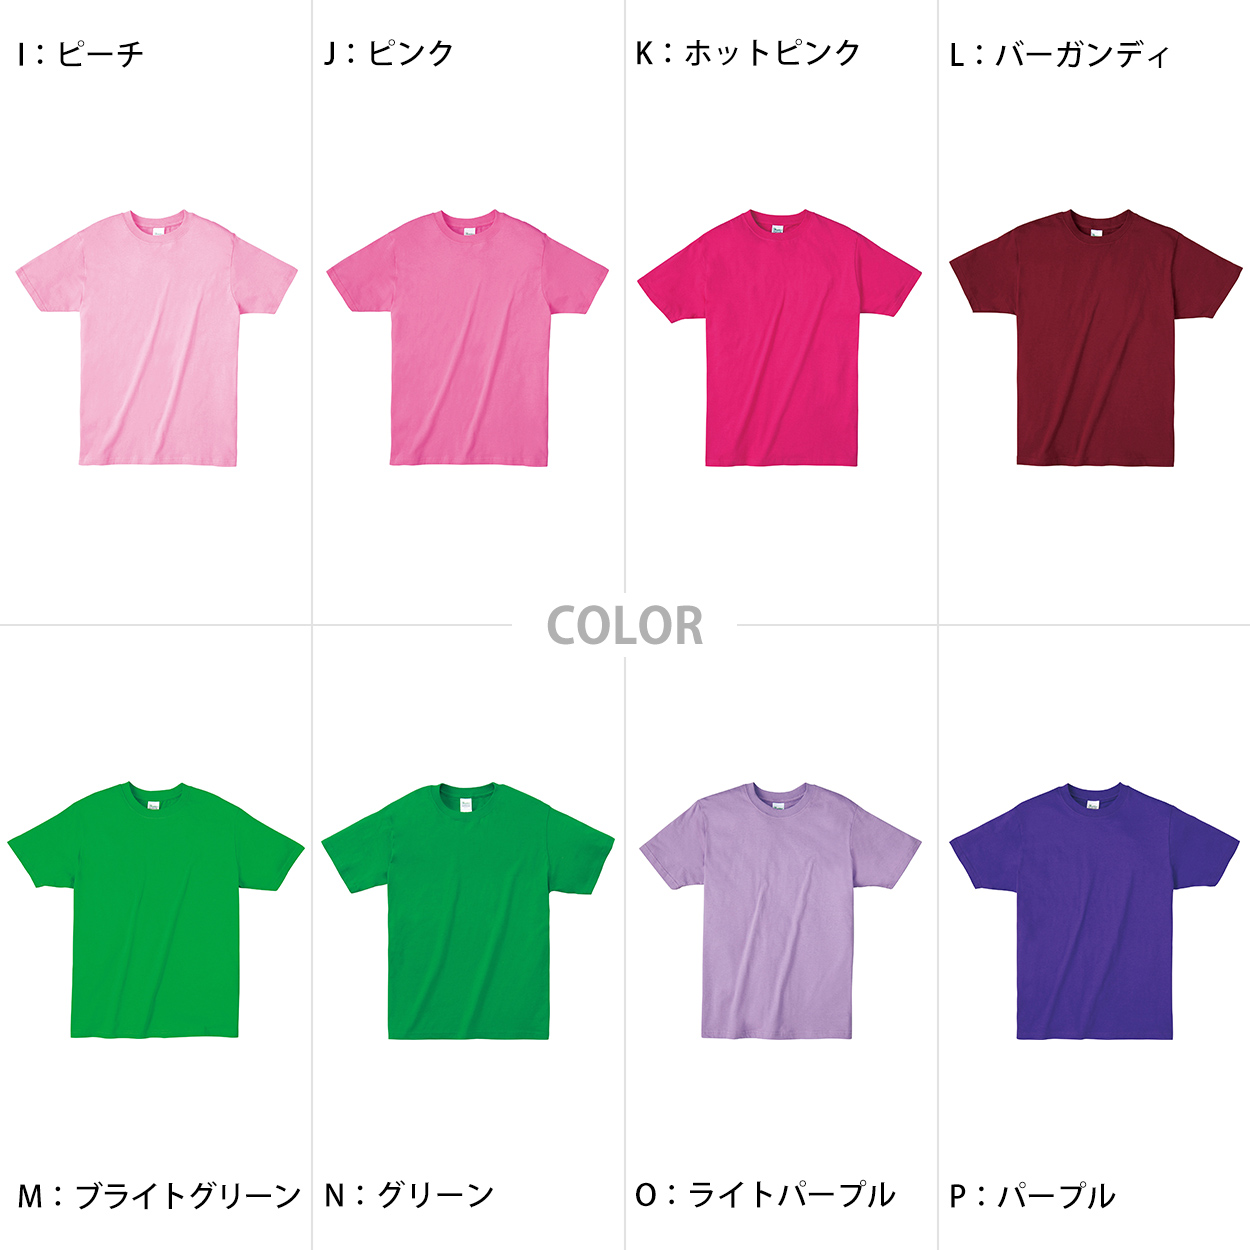 printstar キッズ ジュニア Tシャツ 4.0オンス 男女兼用 150/160 (半袖 シャツ tシャツ ジュニア 男女兼用 男の子 女の子 クルーネック) (取寄せ)